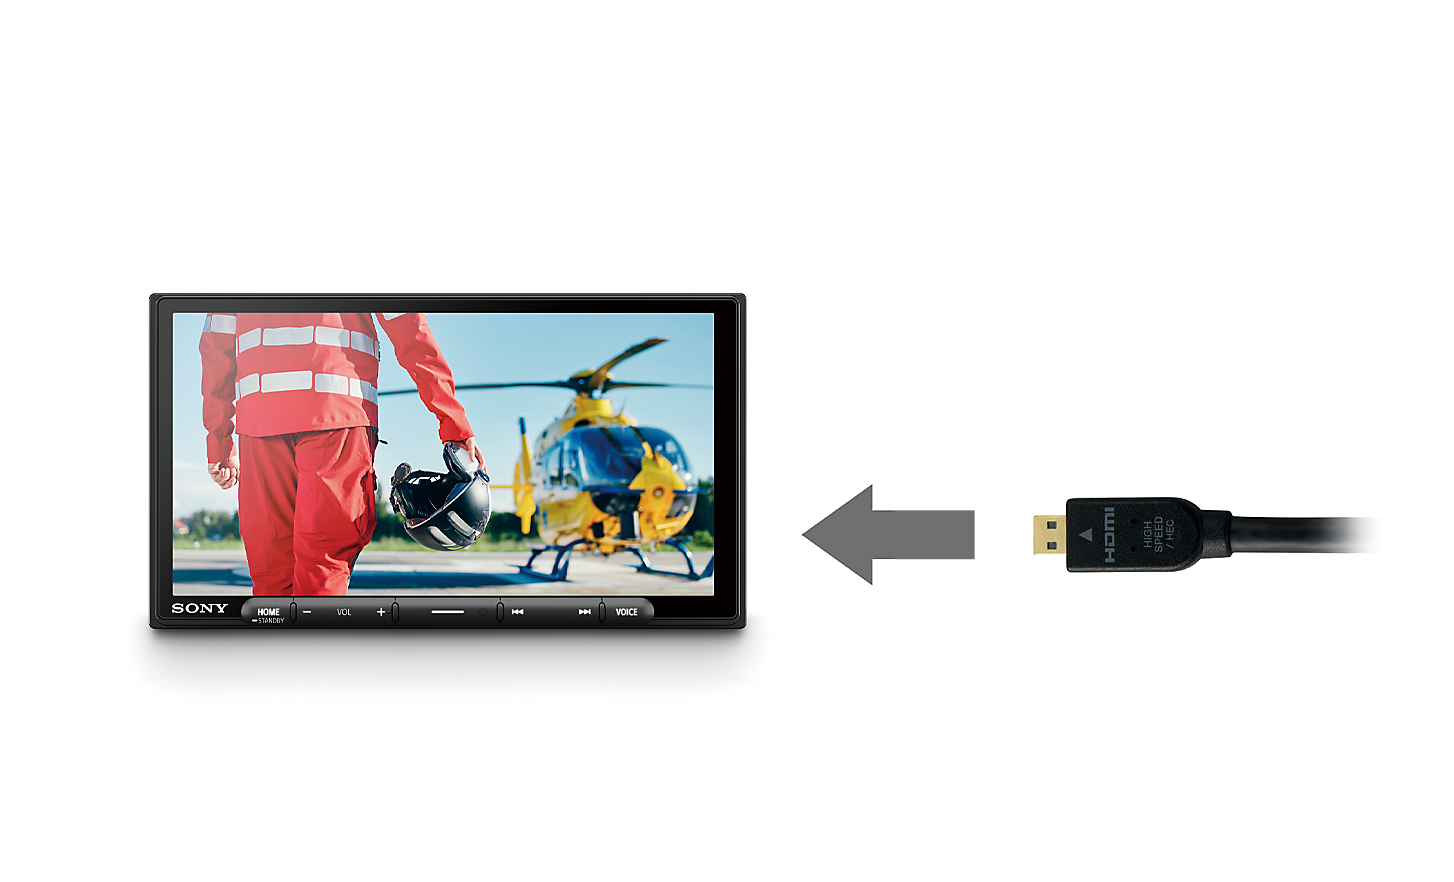 HDMI-kábel képe egy nyíllal, amely az XAV-AX6050 felé mutat, a képernyőn egy pilótával és egy helikopterrel